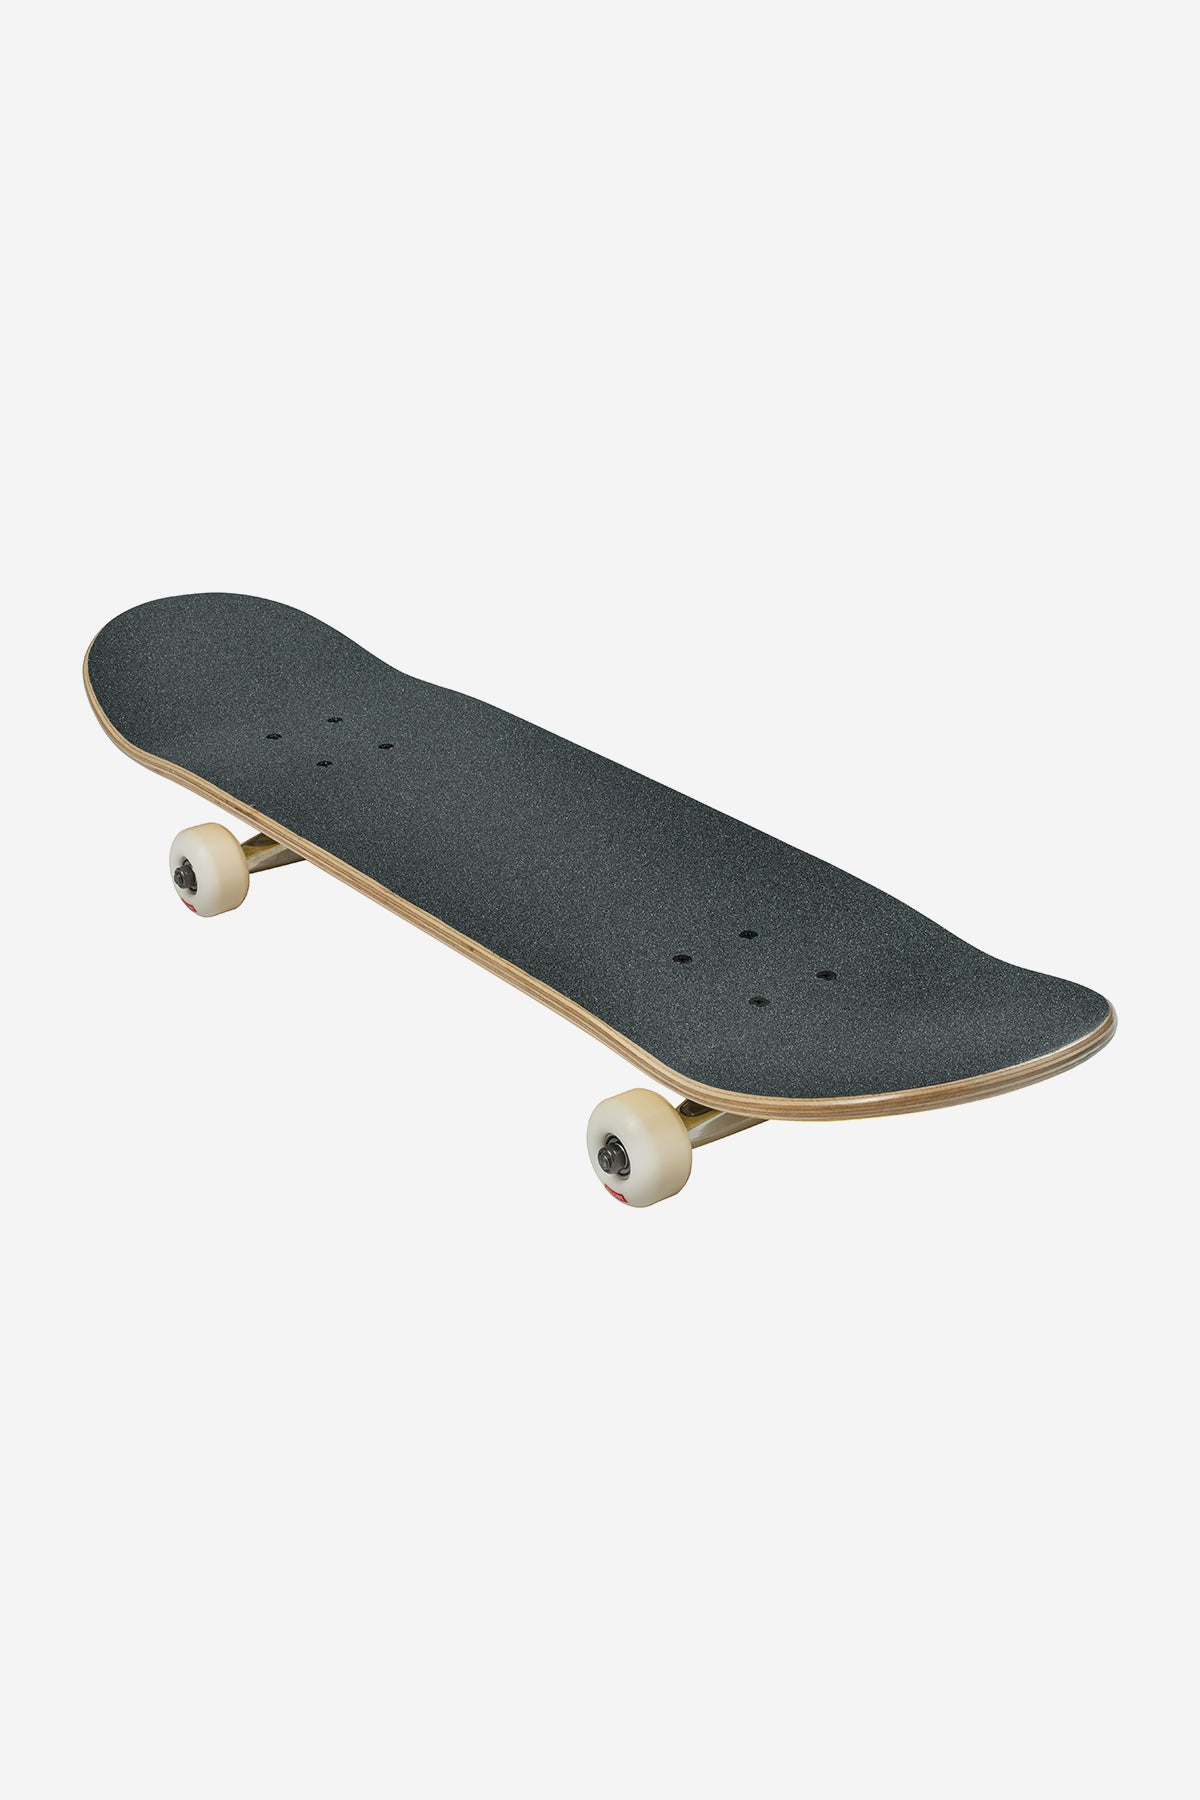 Globe - Goodstock - Sahara- 8.375" complet Skateboard